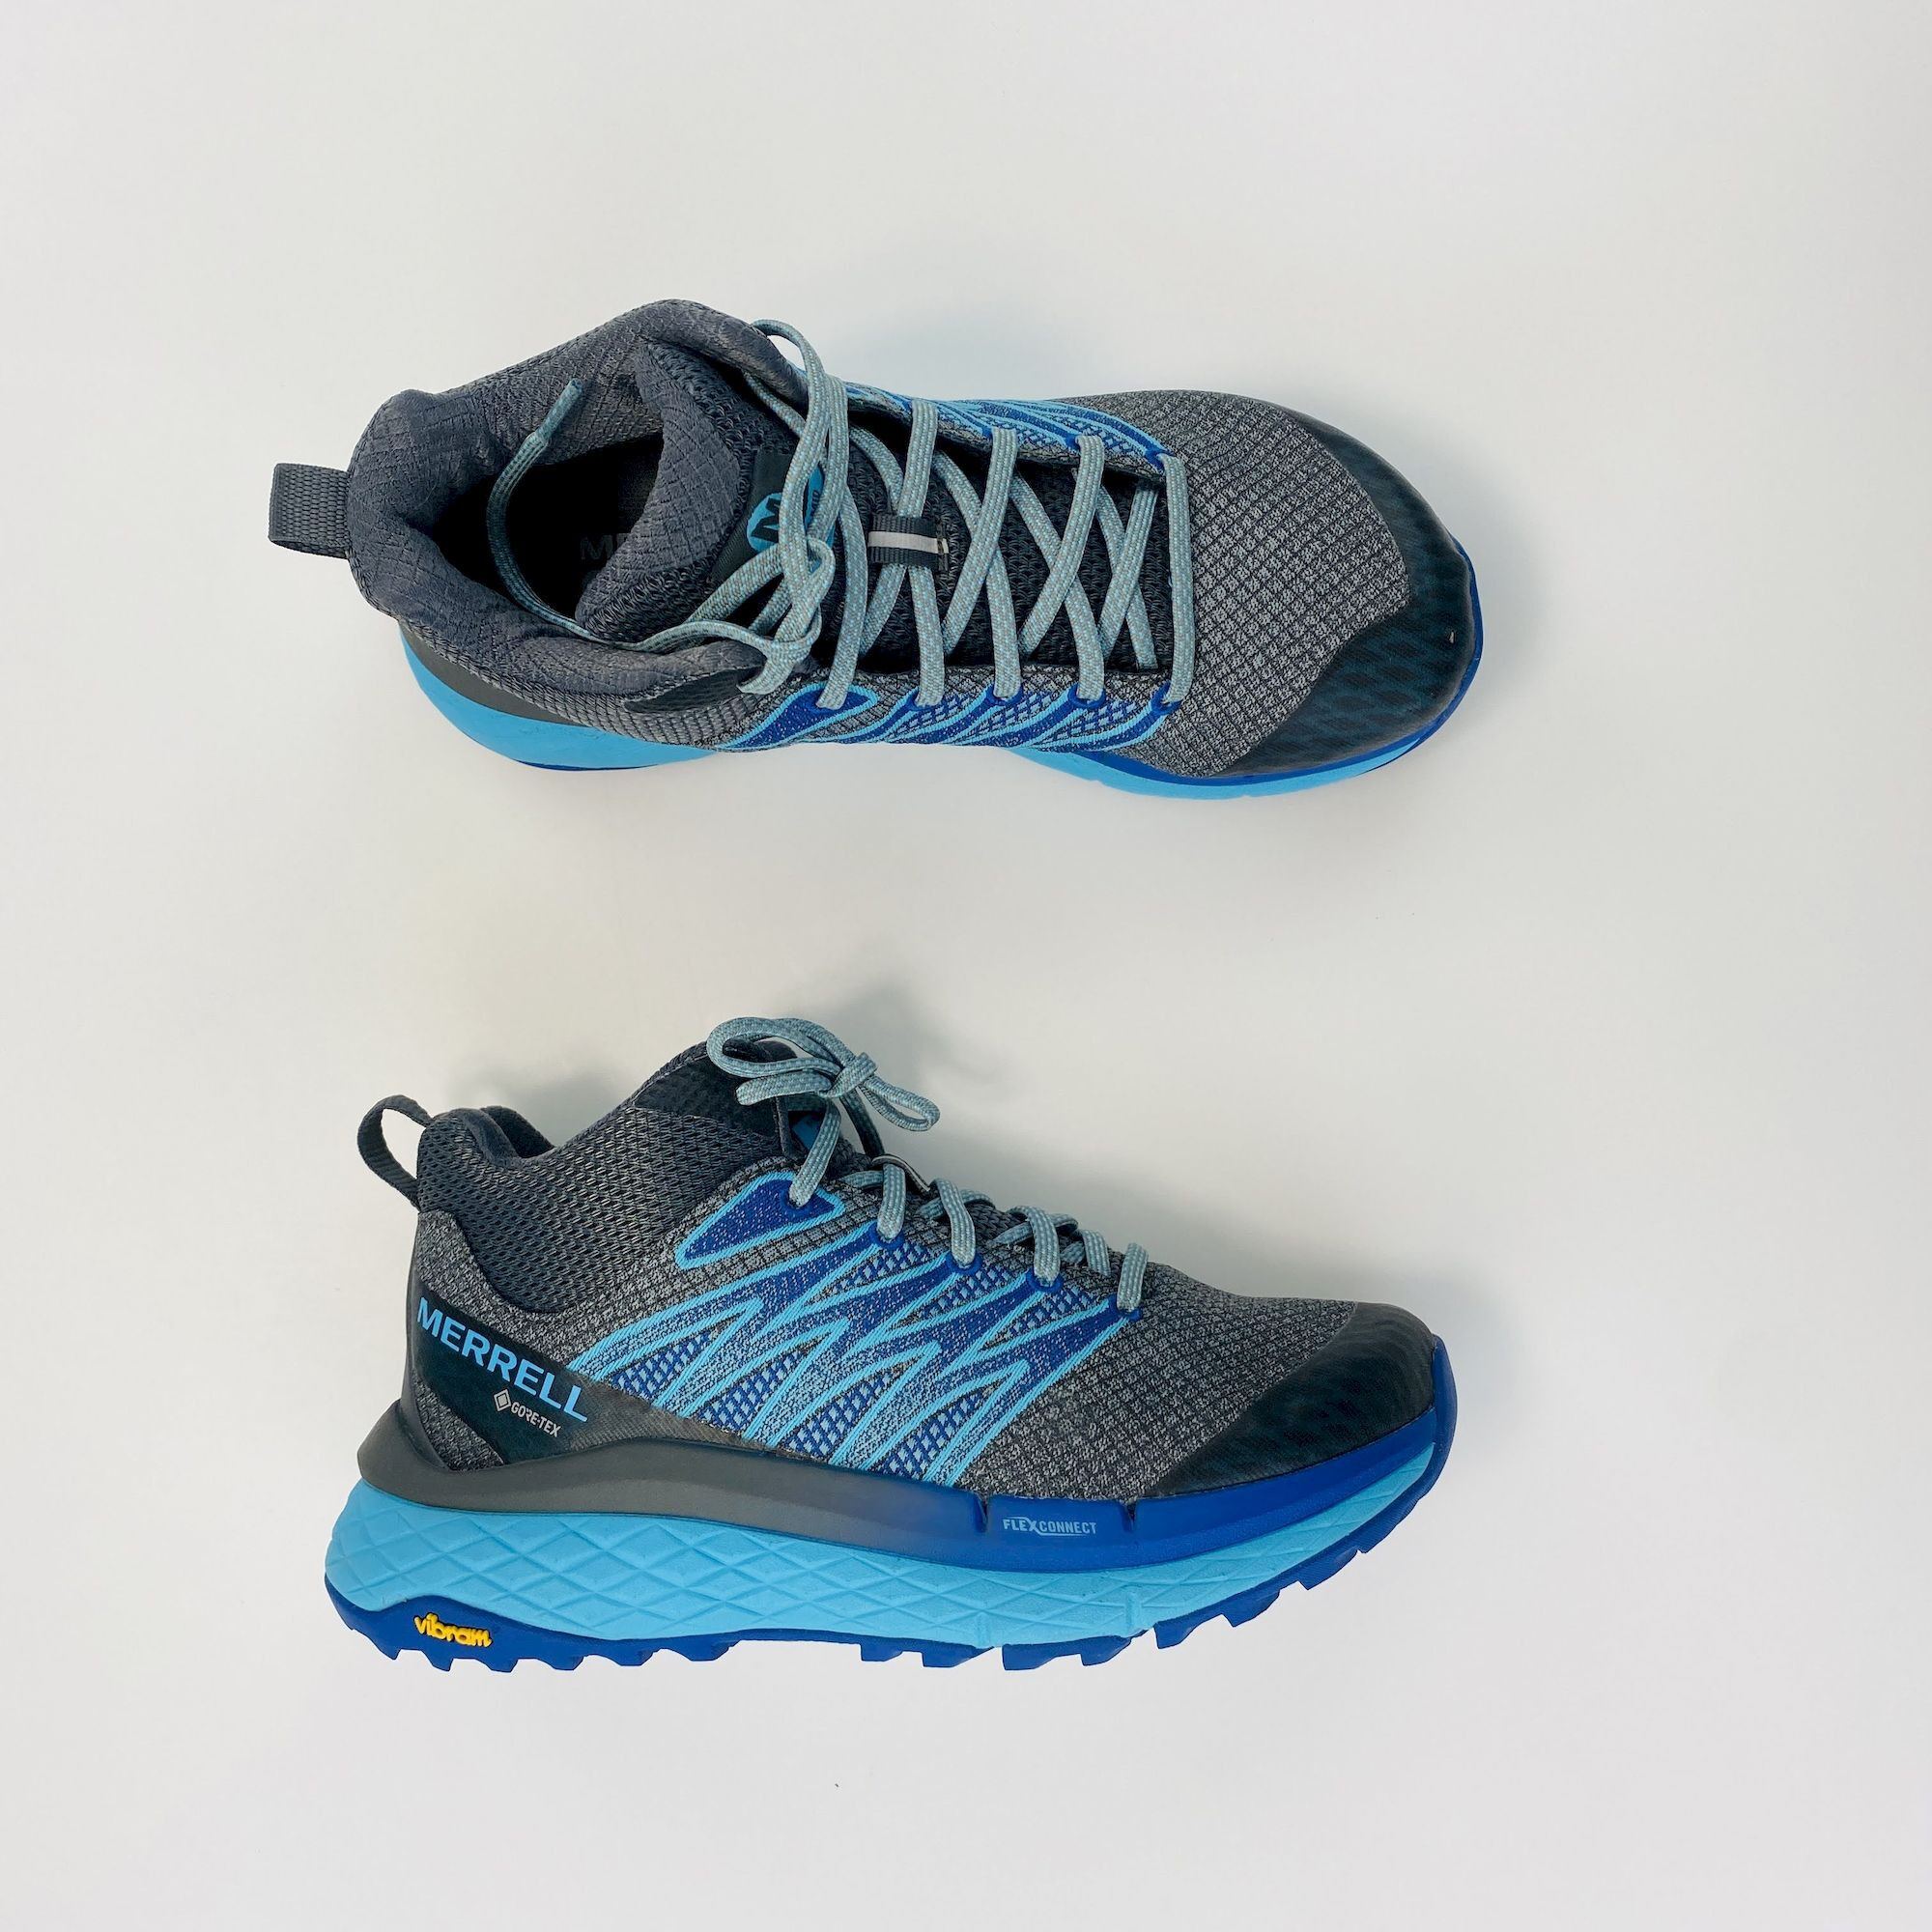 Merrell Chaussures randonnée Mid - Second Hand Walking shoes - Women's - Gris/Bleu - 37.5 | Hardloop